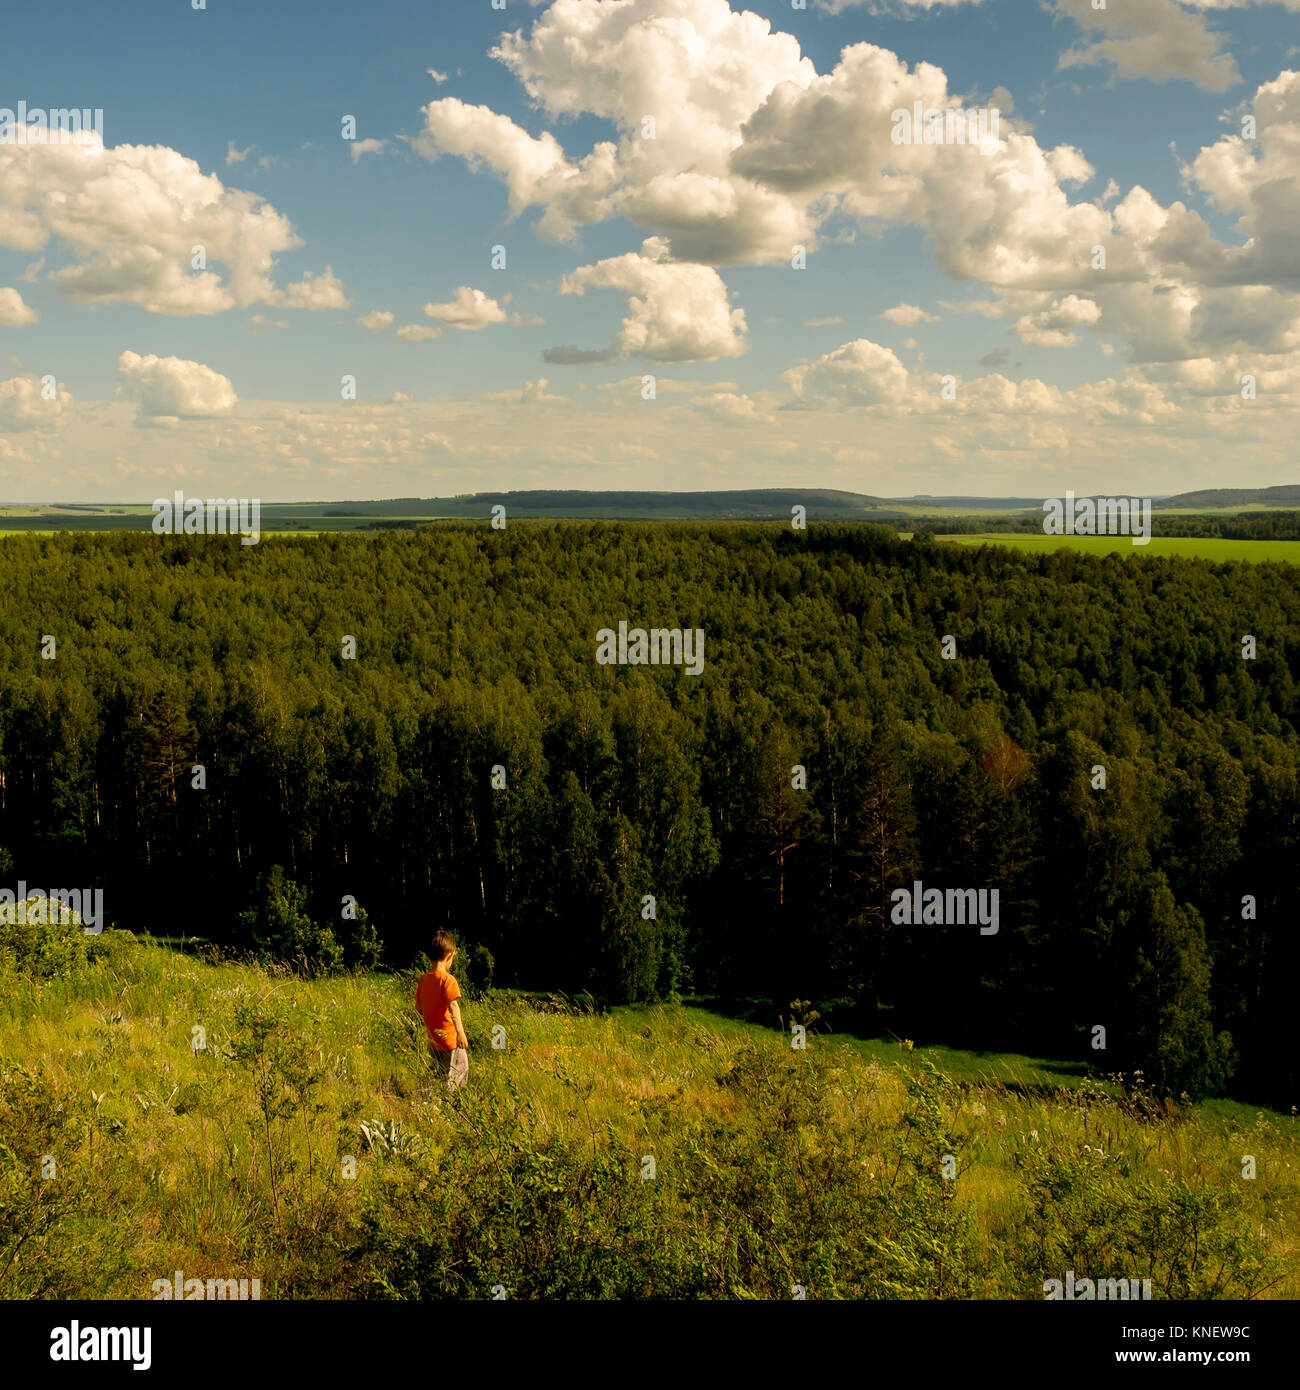 Young boy walking through field, Ural, Chelyabinsk, Russia, Europe Stock Photo